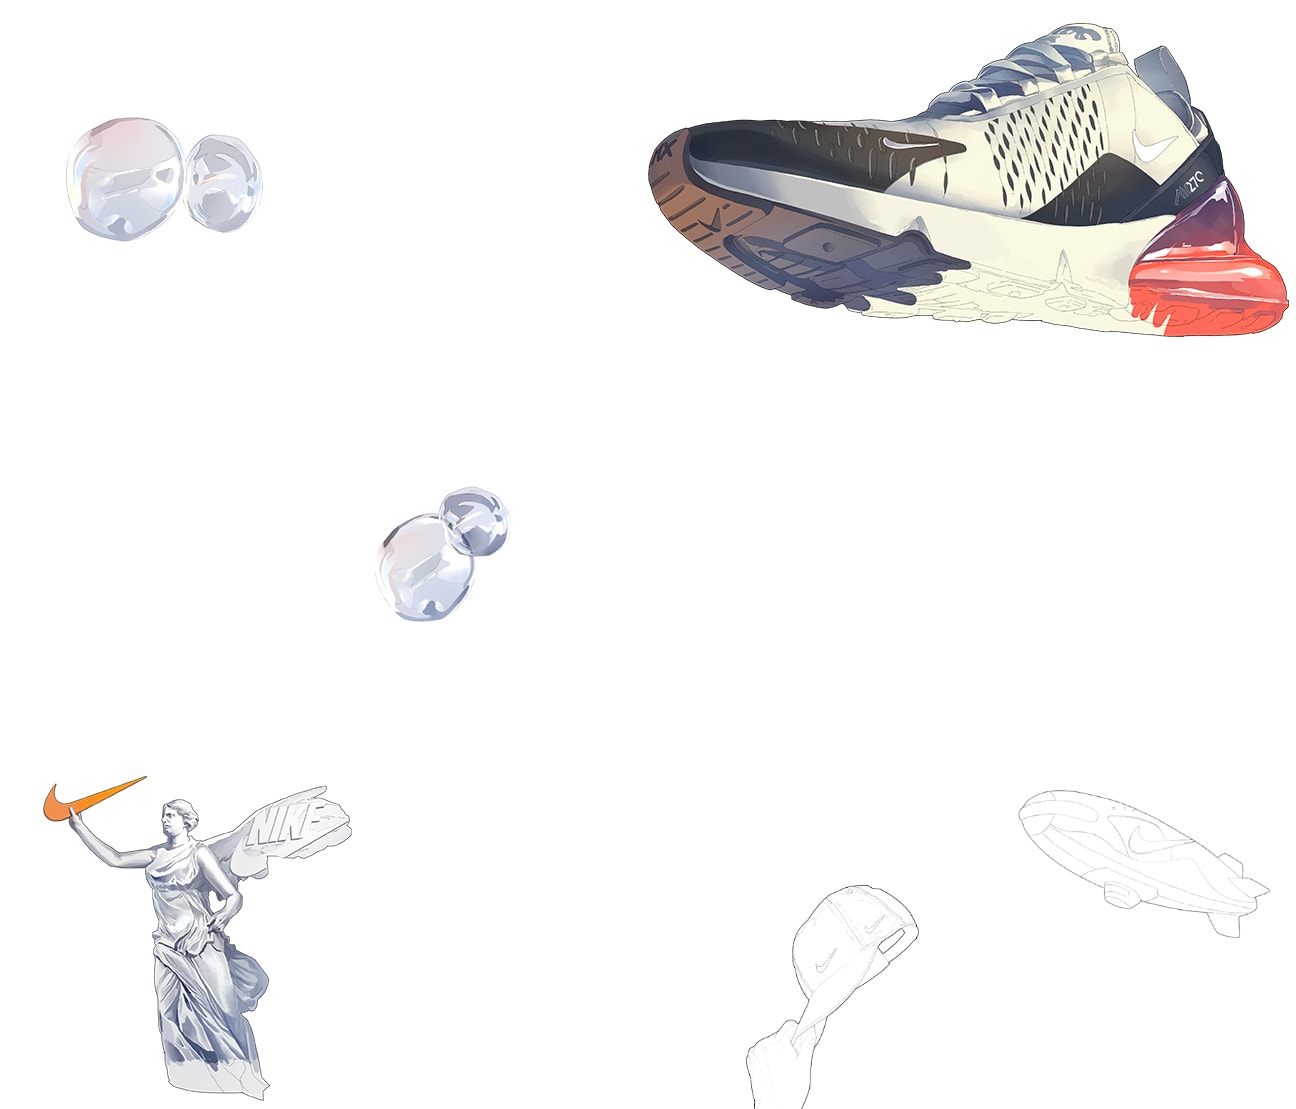 HYPEBEAST 打造 Nike Air Max 瘋狂藝術實驗計劃